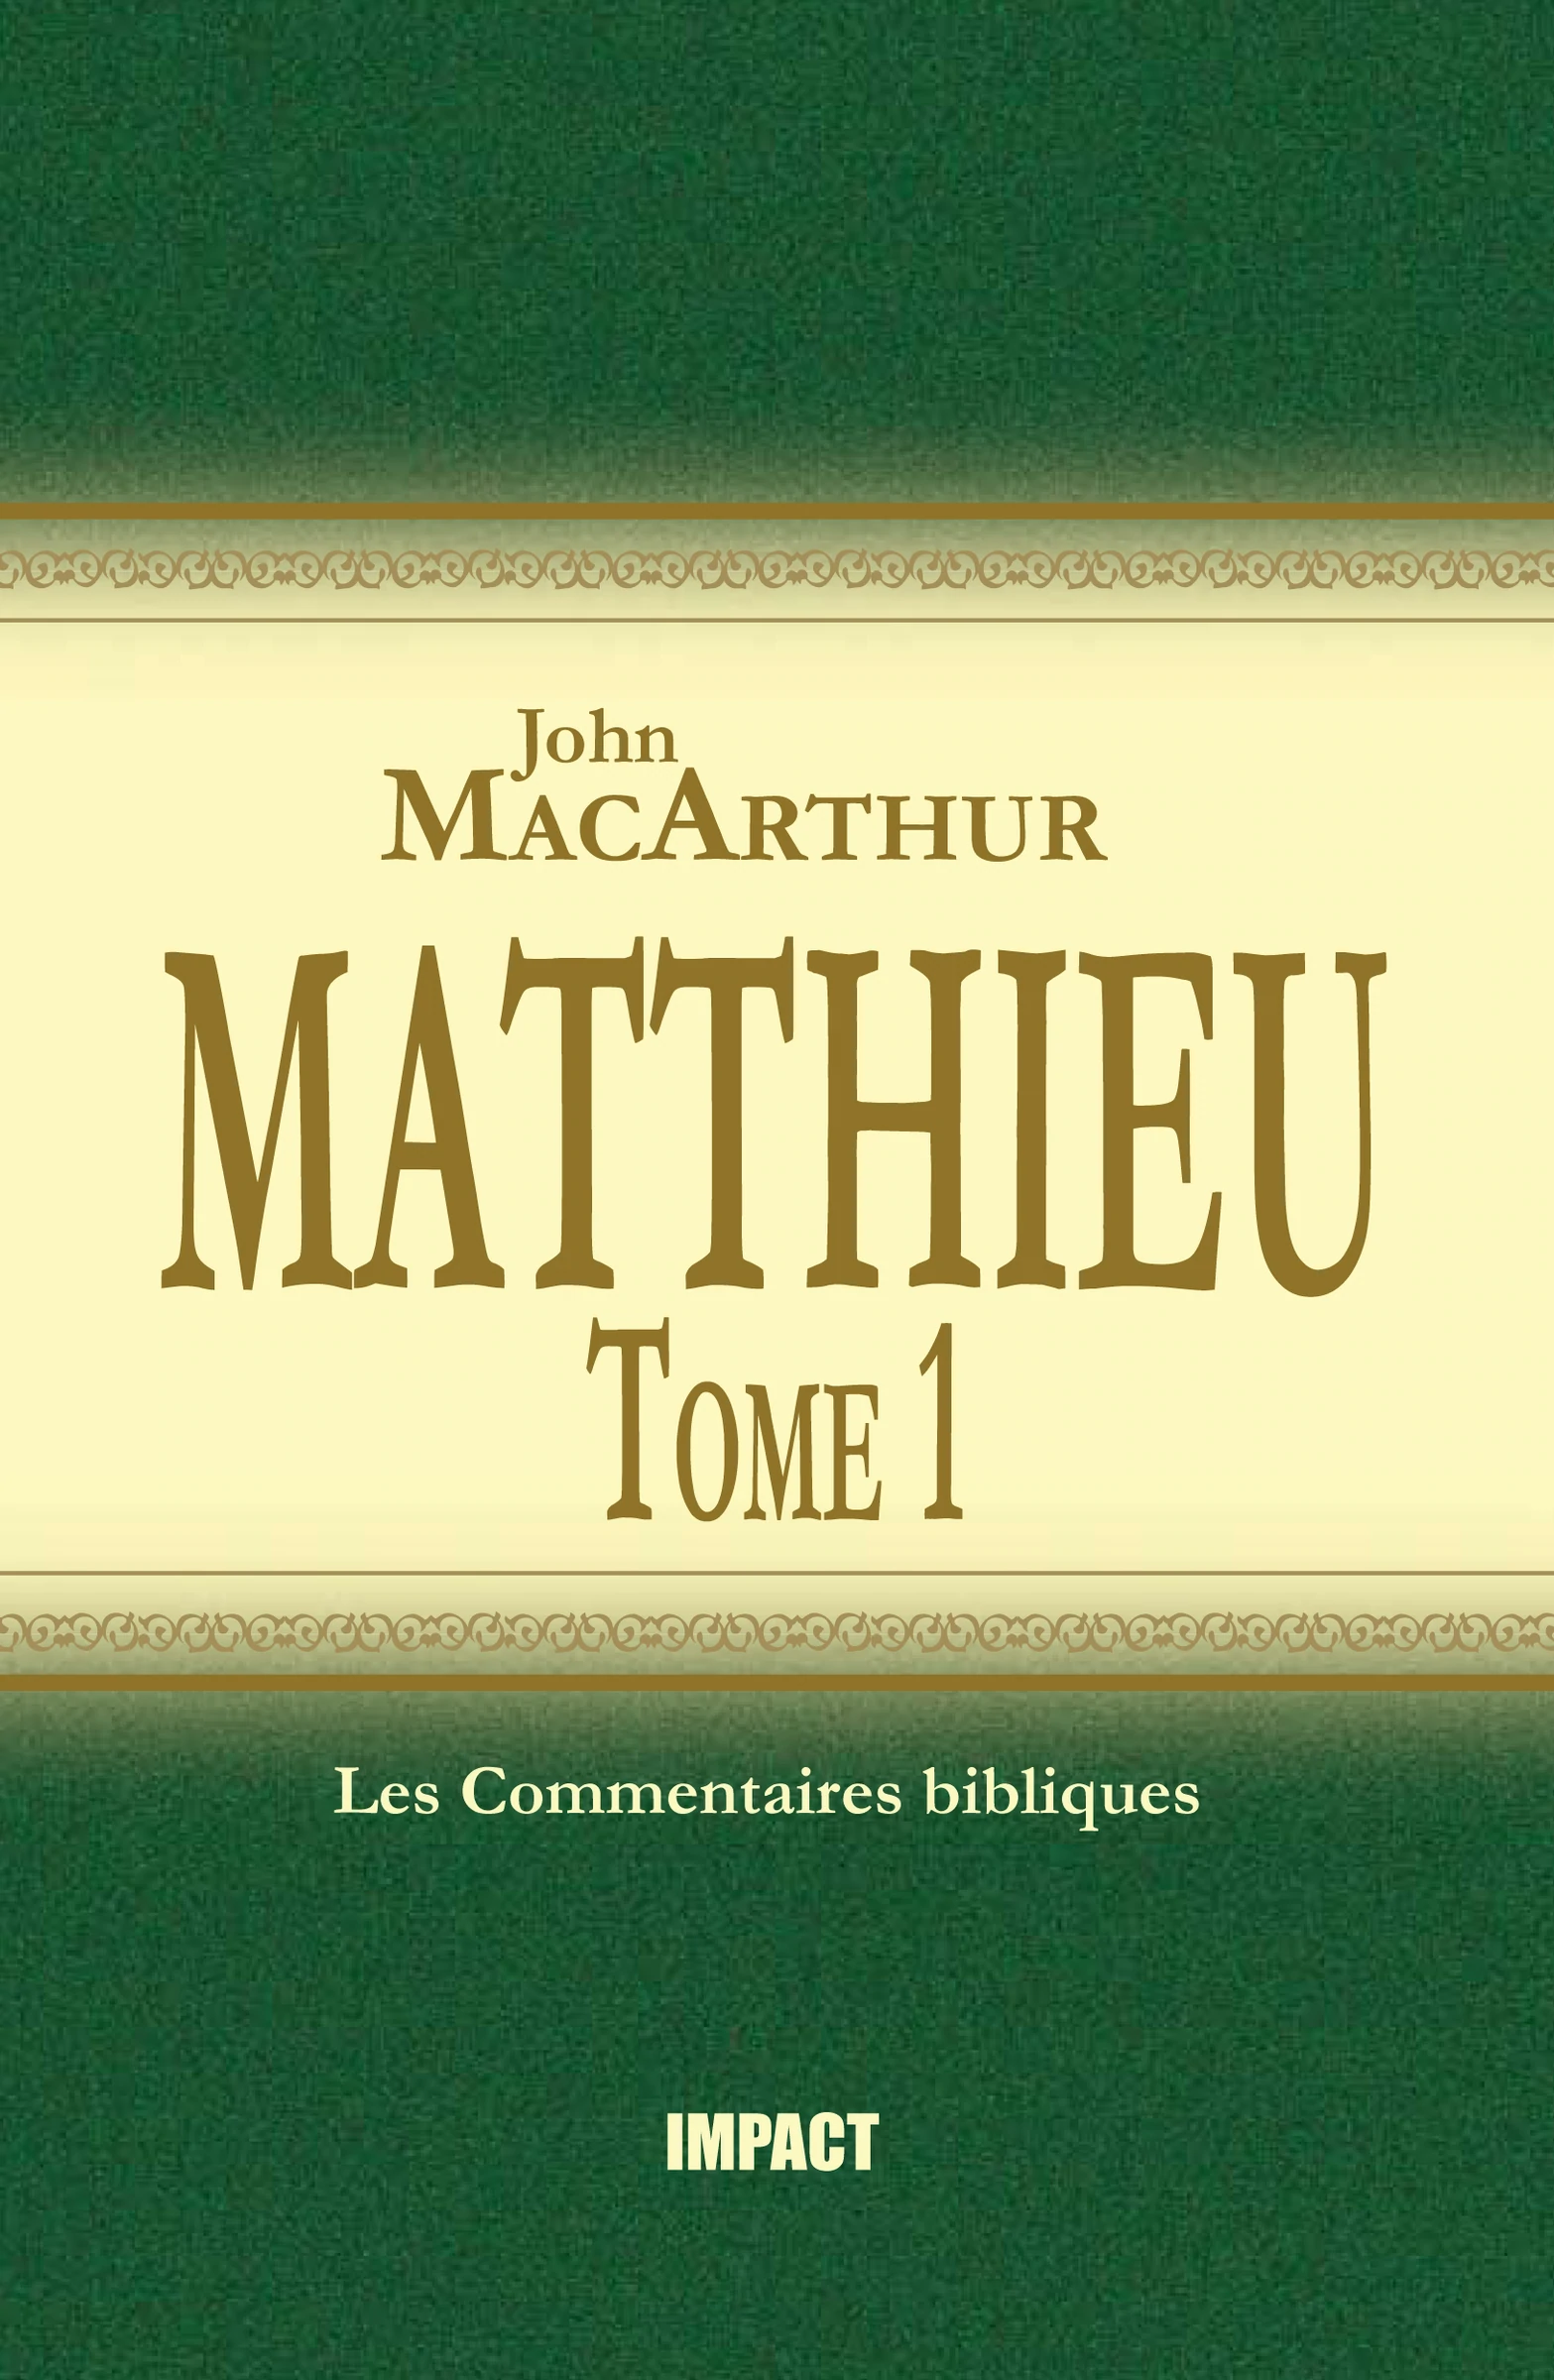 Matthieu - tome 1 (ch.1-7) [Les Commentaires bibliques]